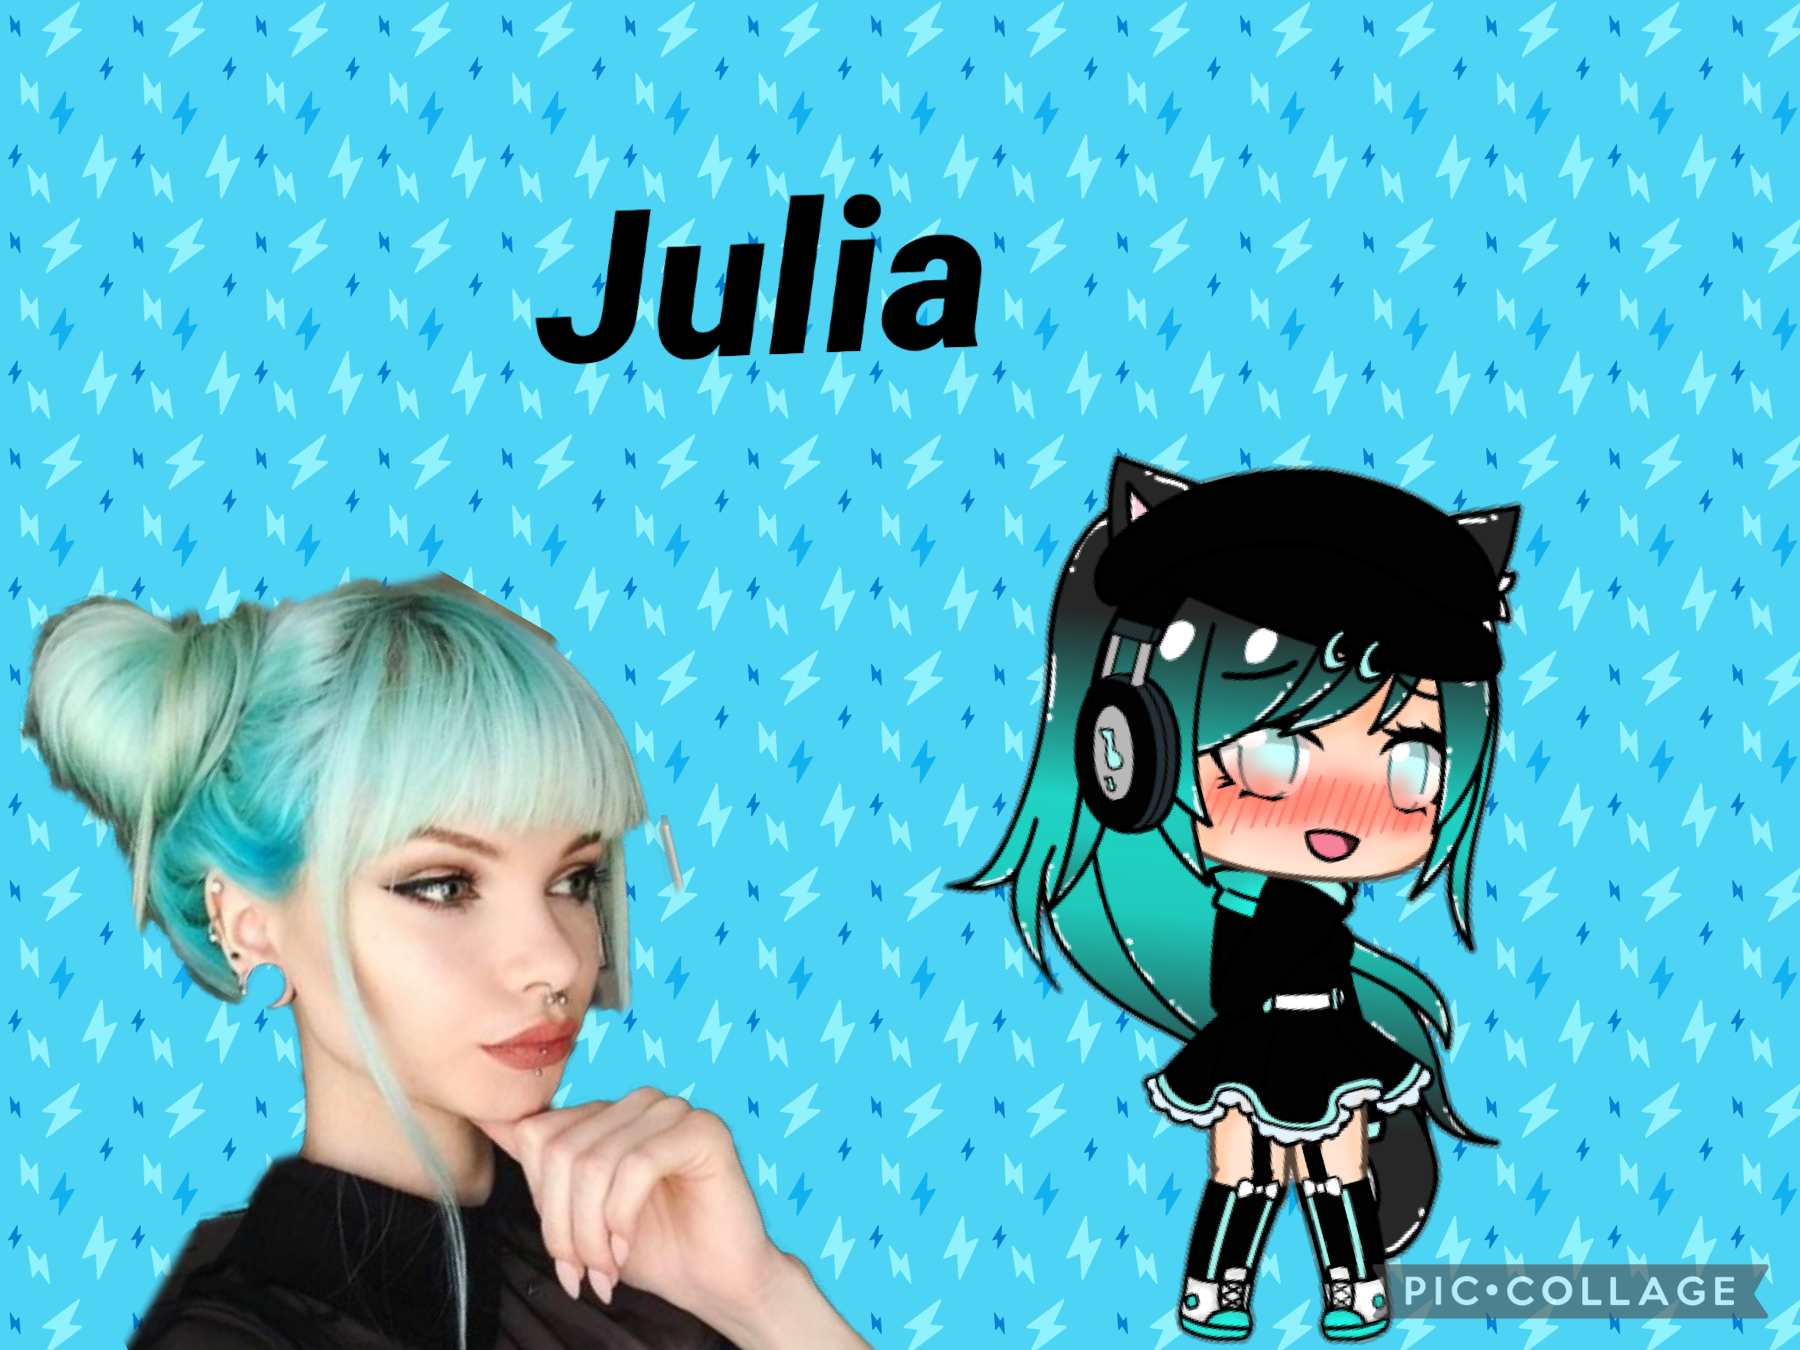 This is Julia my enemie 😑😤😒